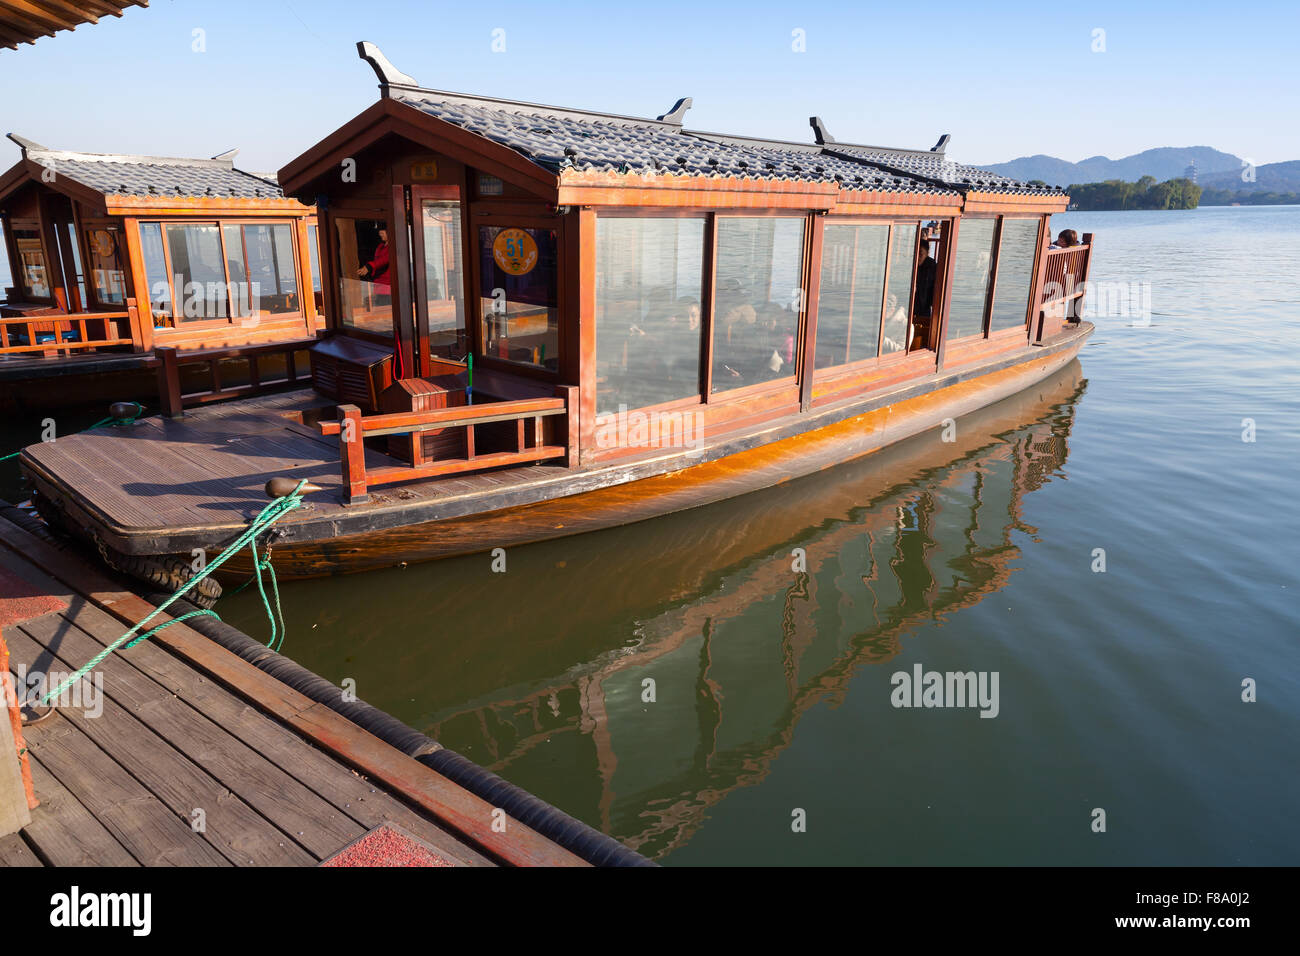 Hangzhou, Chine - décembre 5, 2014 : bateau en bois traditionnel chinois avec des passagers sur le lac de l'Ouest, célèbre parc à Hangzhou Banque D'Images